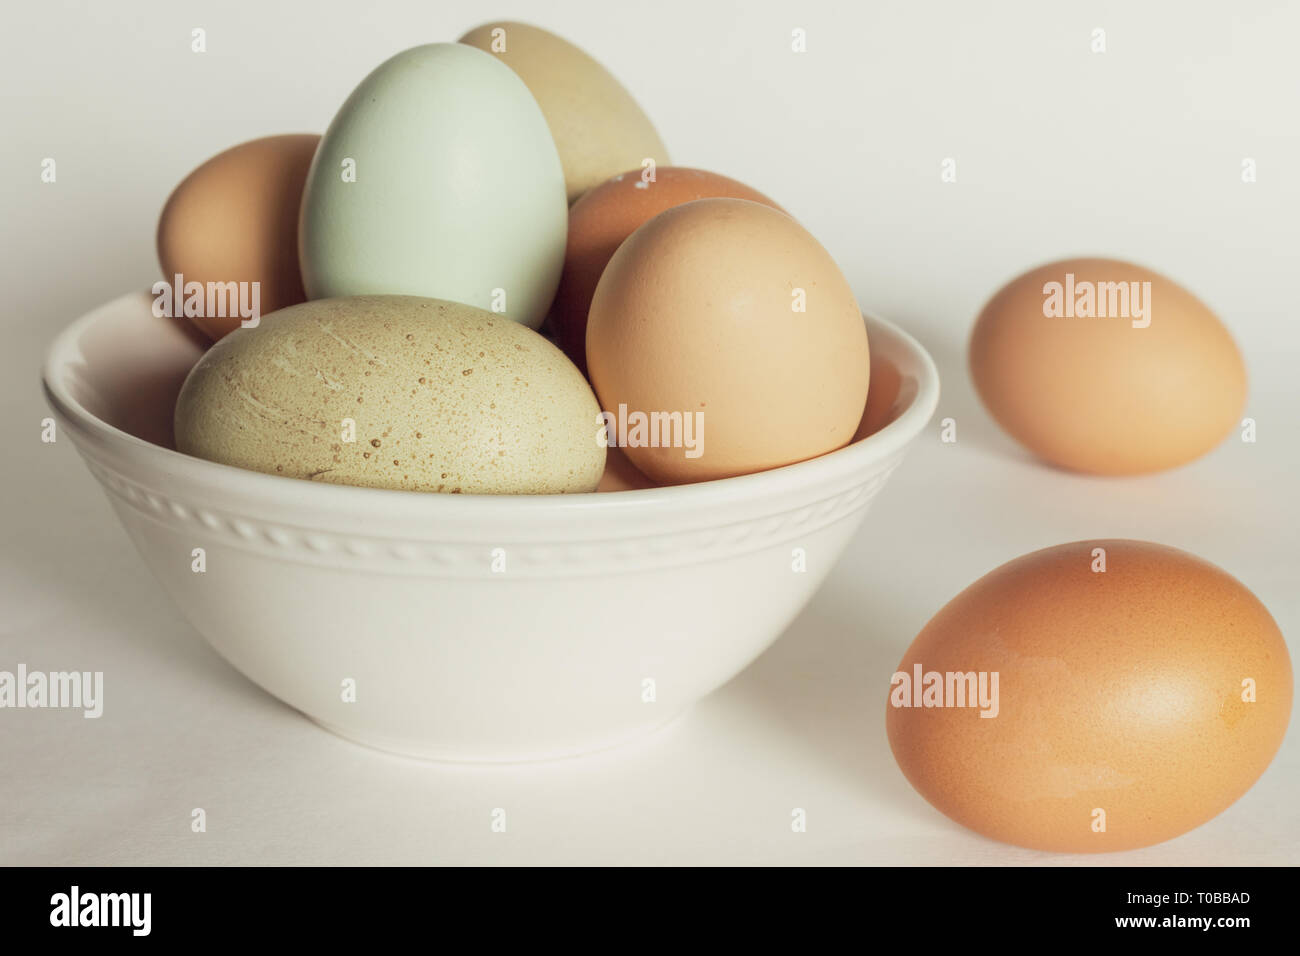 Coloridos huevos de pollo fresco en un tazón Foto de stock